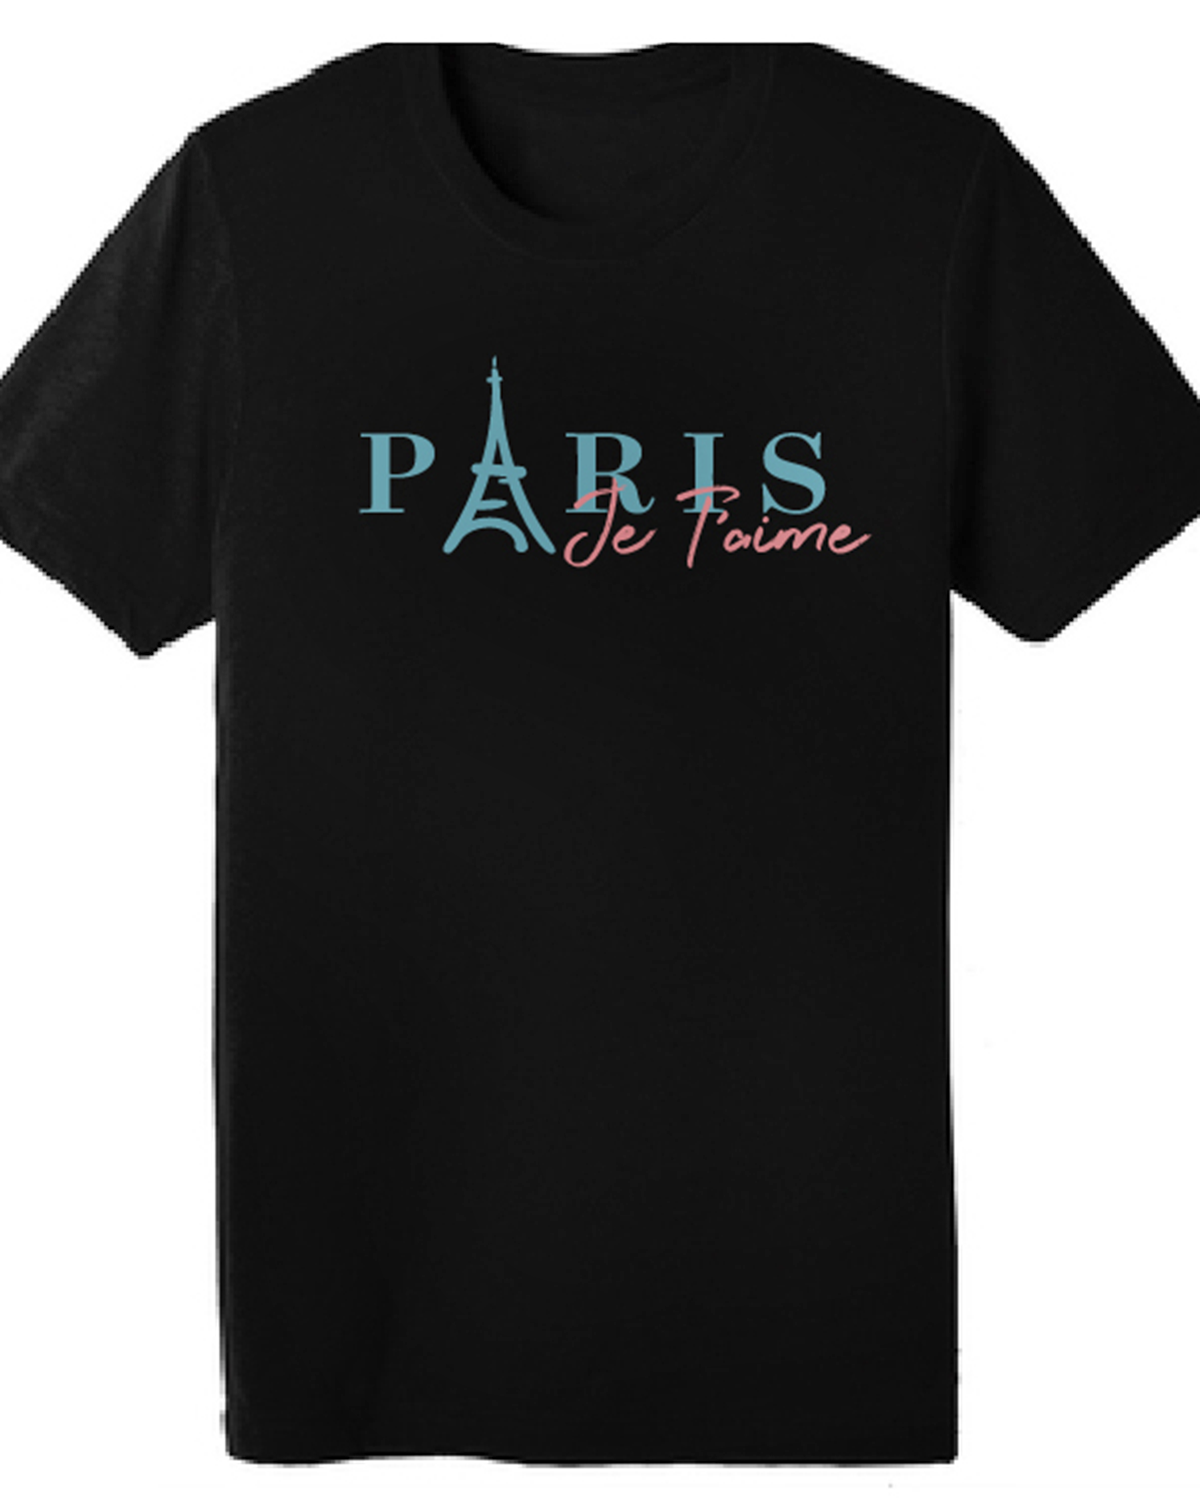 Paris, Je T'aime - Paris, I Love You T-shirt